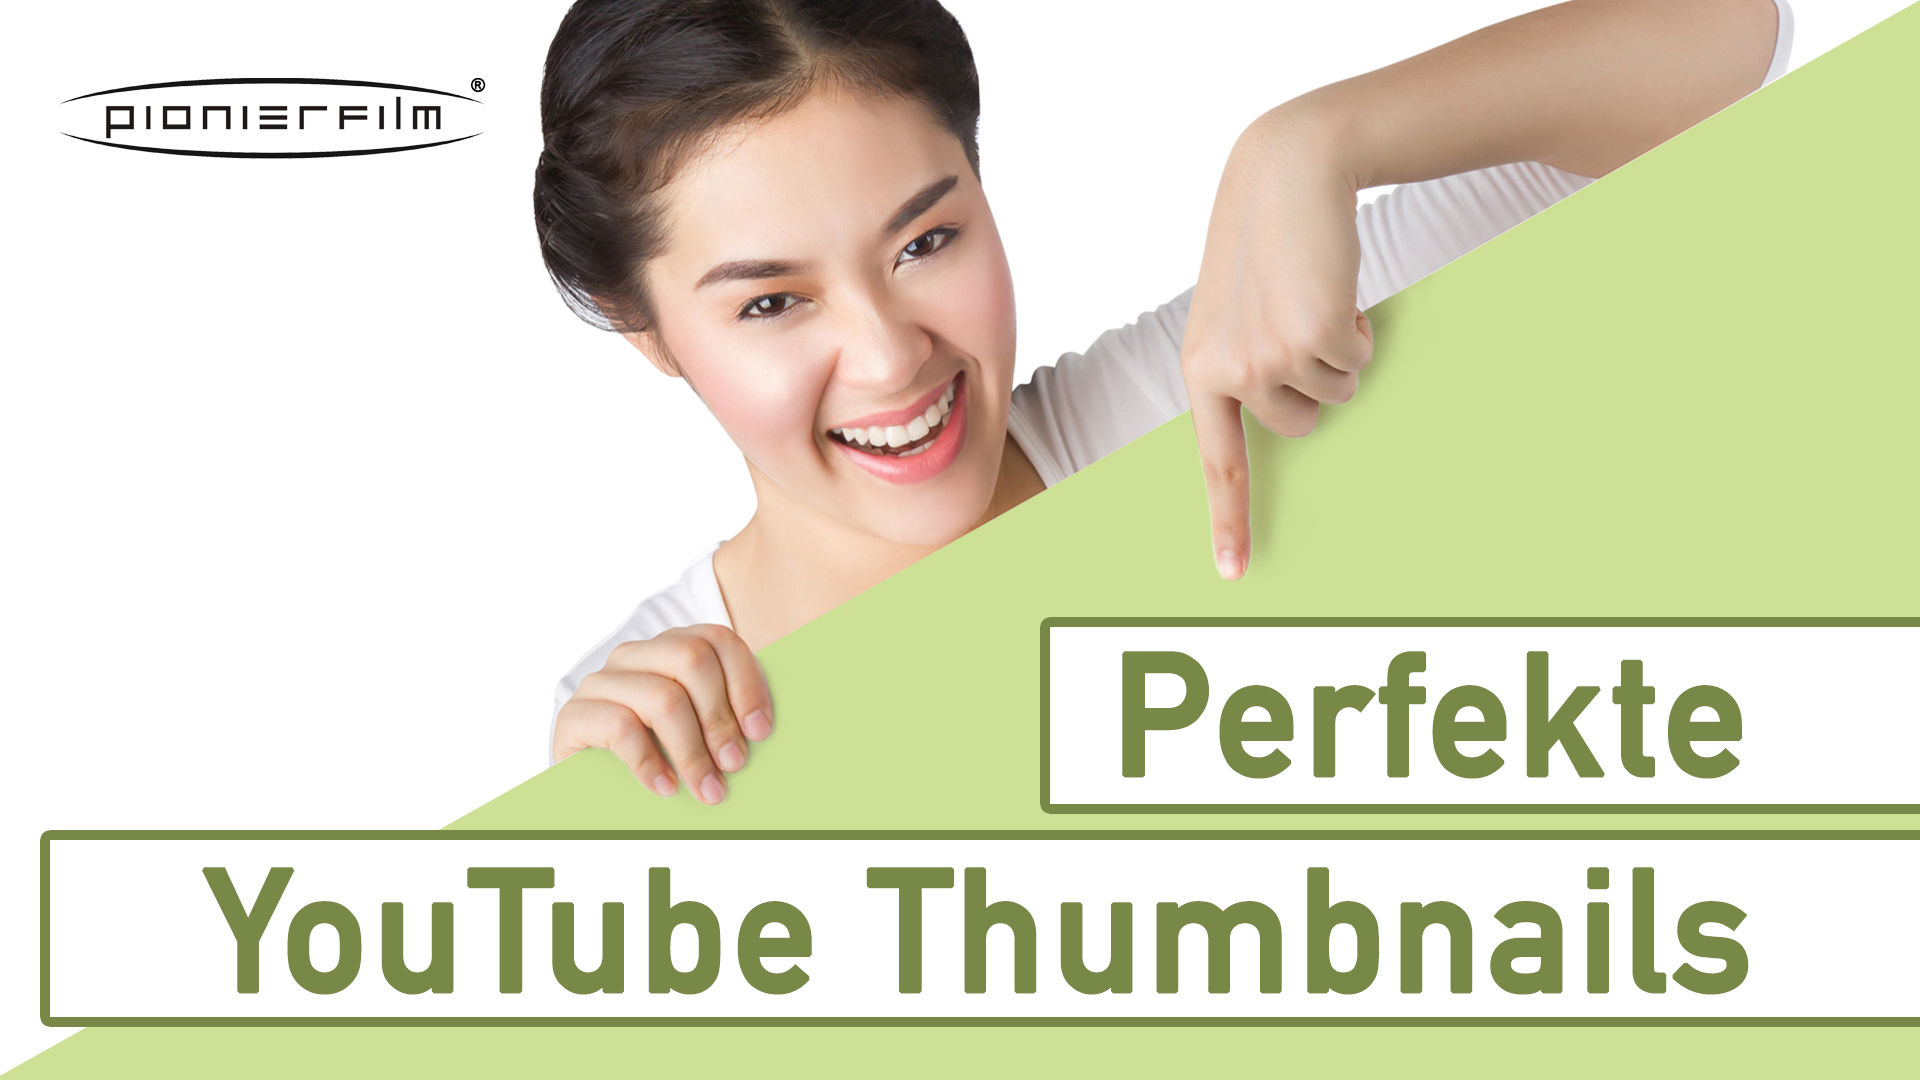 Perfekte YouTube Thumbnails erstellen? Das geht ganz einfach.